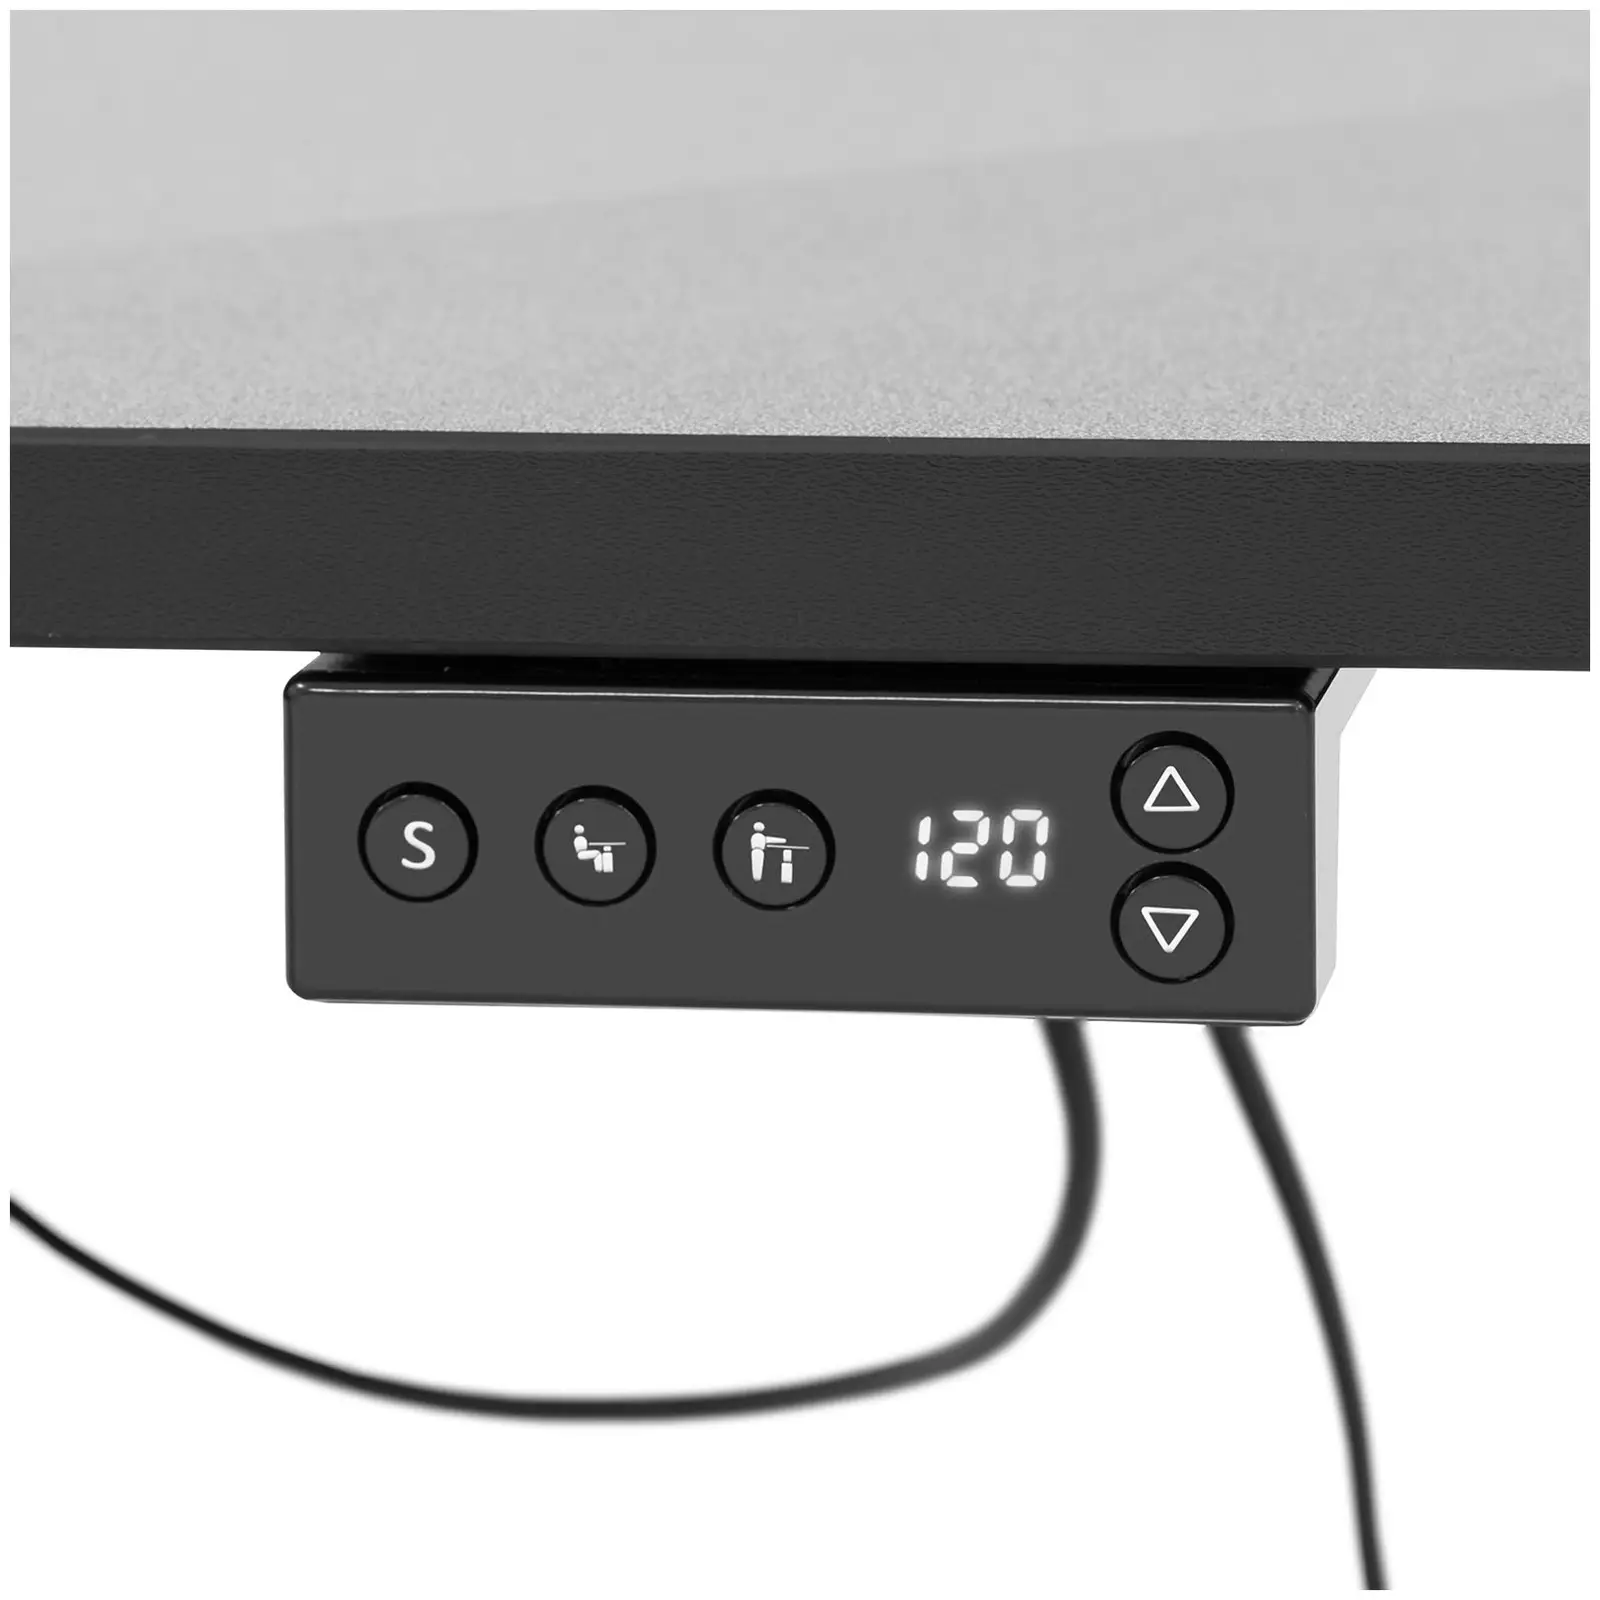 Corner desk height adjustable - 720 - 1200 mm - 80 kg - black